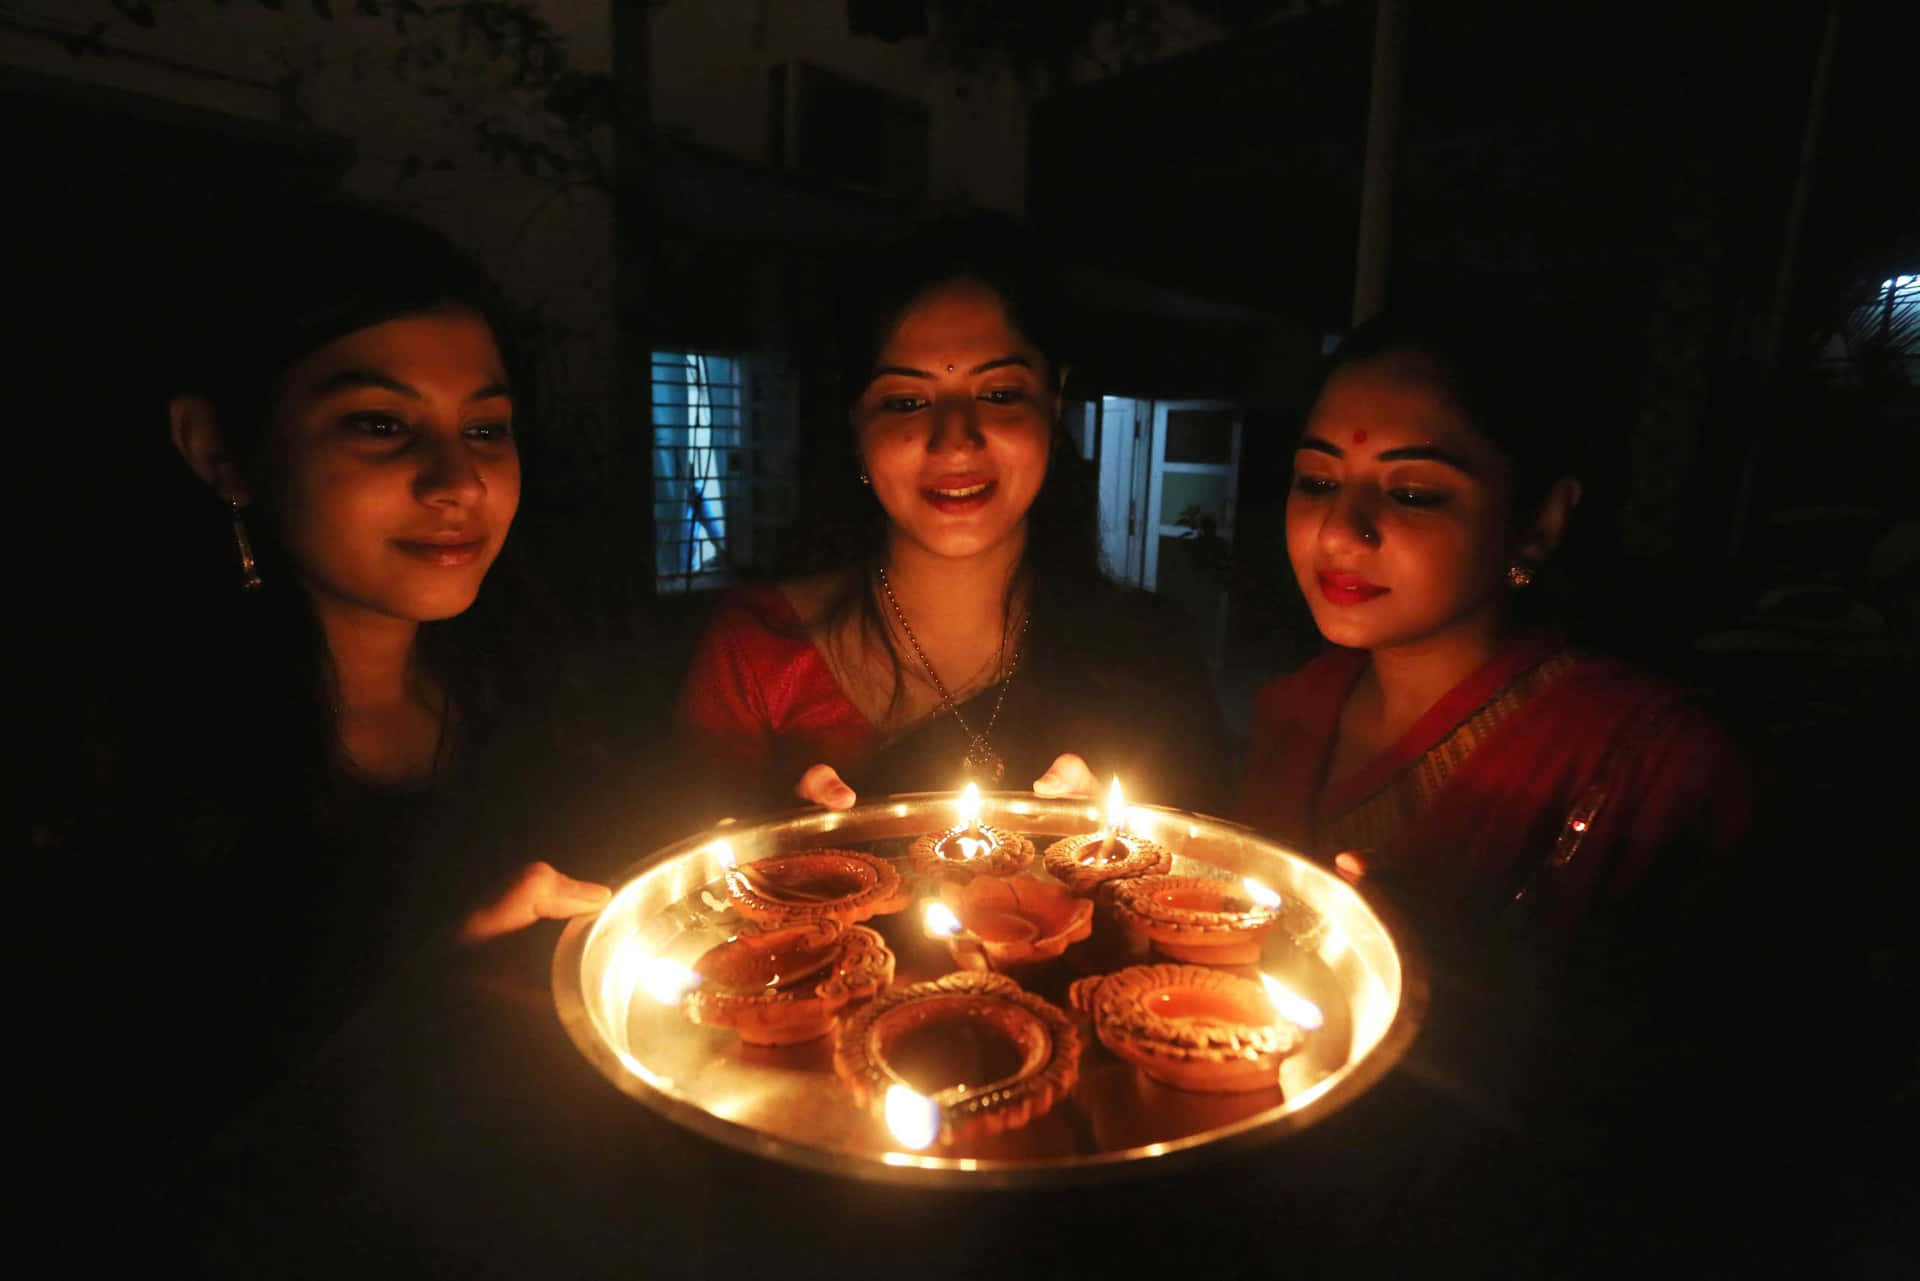 Dreifrauen Halten Kerzen Vor Einem Teller.